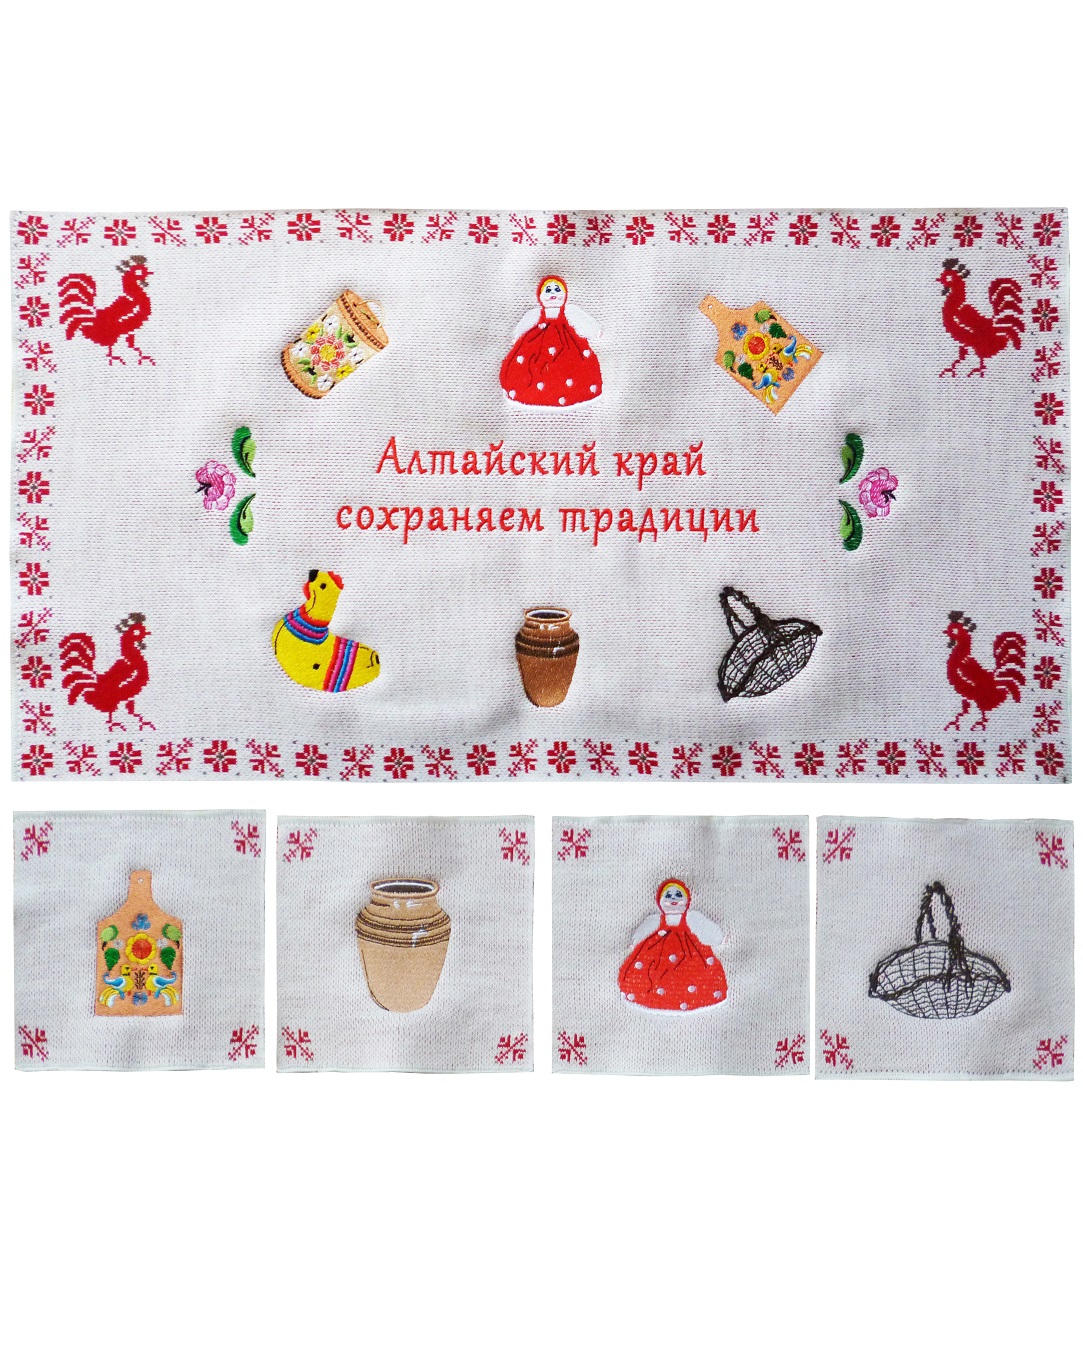 вязаный комплект подставок под горячее с вышивкой "традиции Алтайского края"